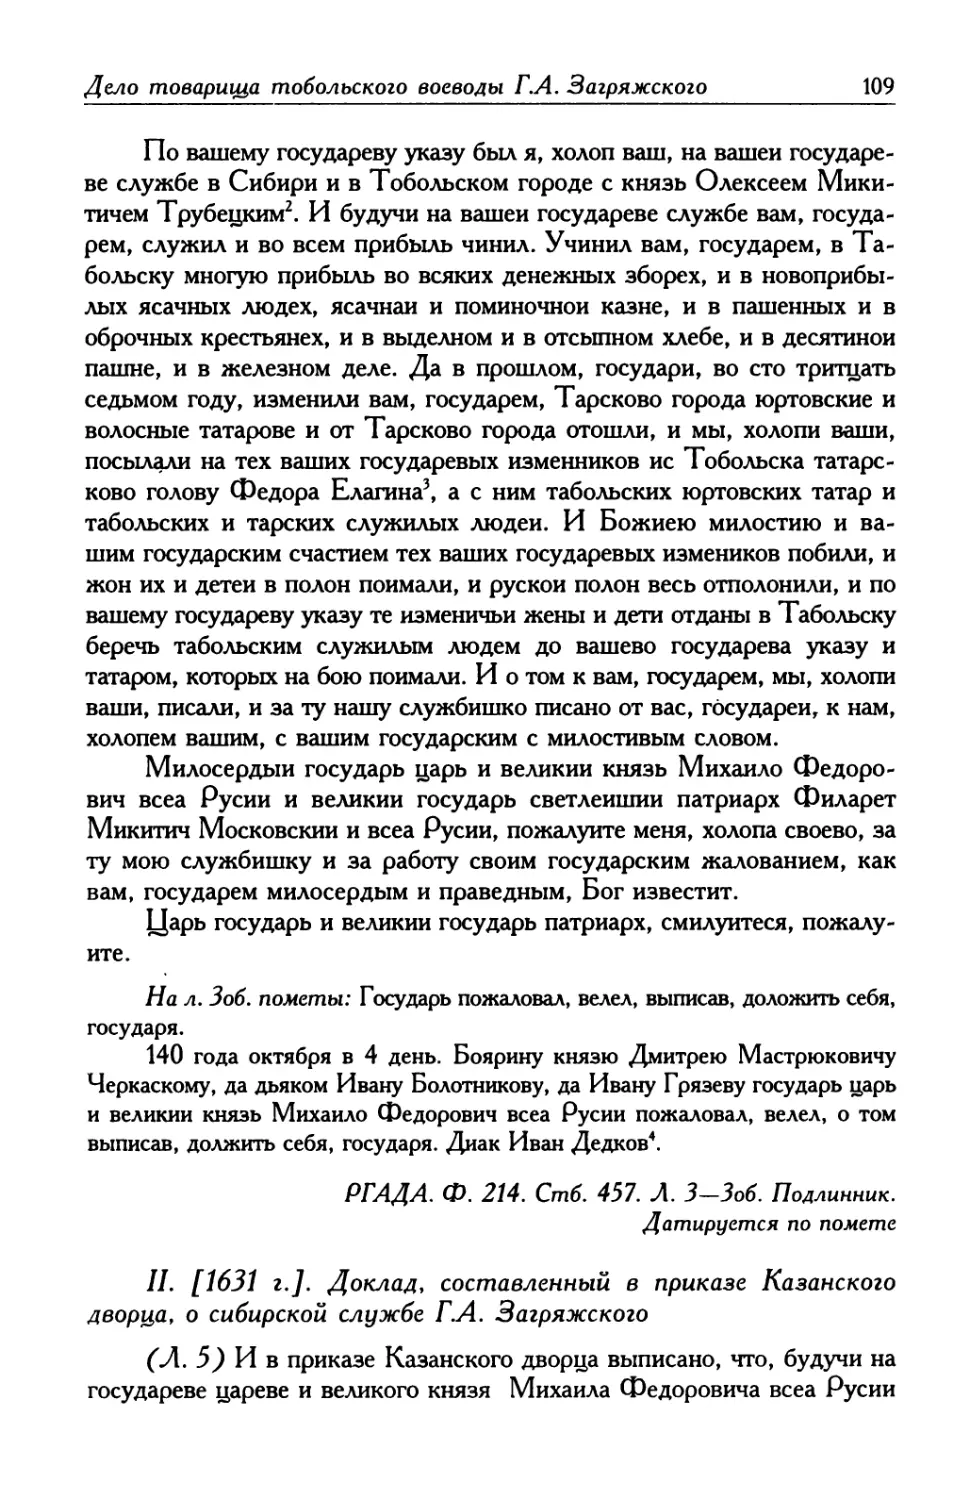 II. [1631 г.]. Доклад, составленный в приказе Казанского дворца, о сибирской службе Г. А. Загряжского